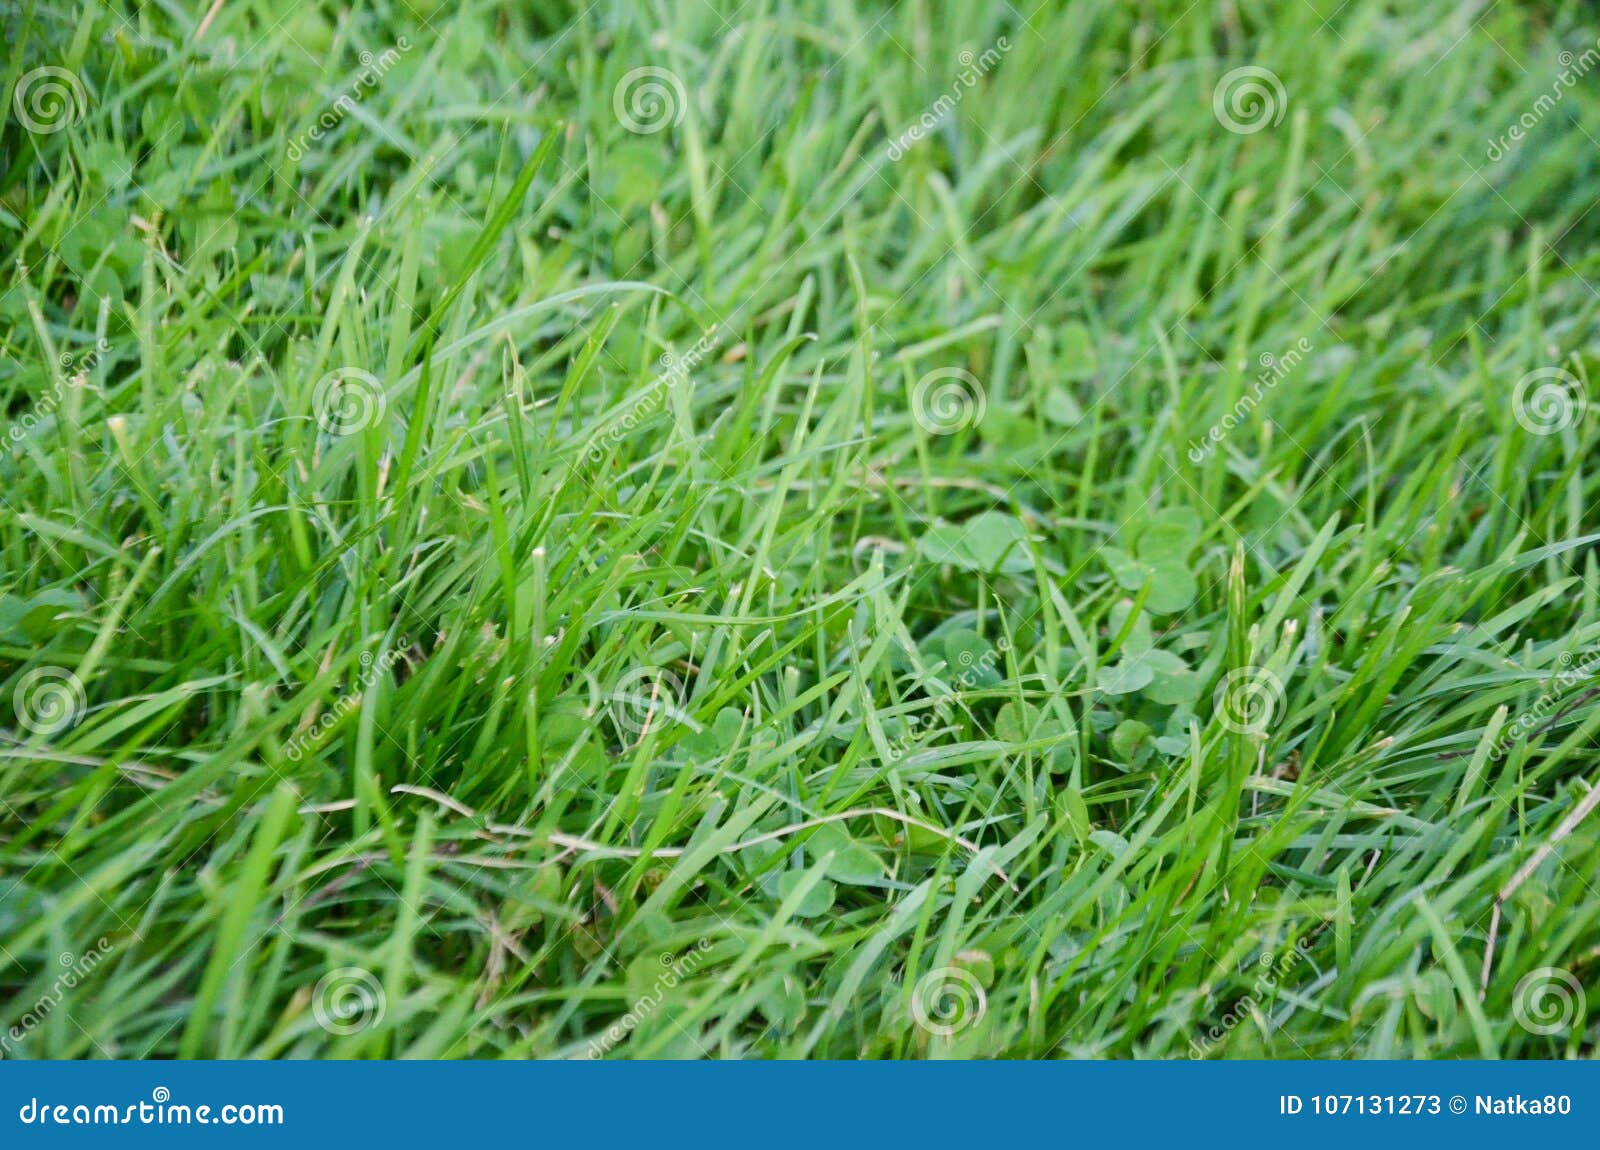 Hình ảnh nền cỏ xanh stock đẹp mắt, mang lại cảm giác mát mẻ và tự nhiên cho người xem. Được chụp bởi các nhiếp ảnh gia tài năng, hình ảnh này sẽ đem lại cho bạn những ý tưởng sáng tạo và làm mới cho mọi dự án của bạn. Hãy thưởng thức hình ảnh này ngay hôm nay!